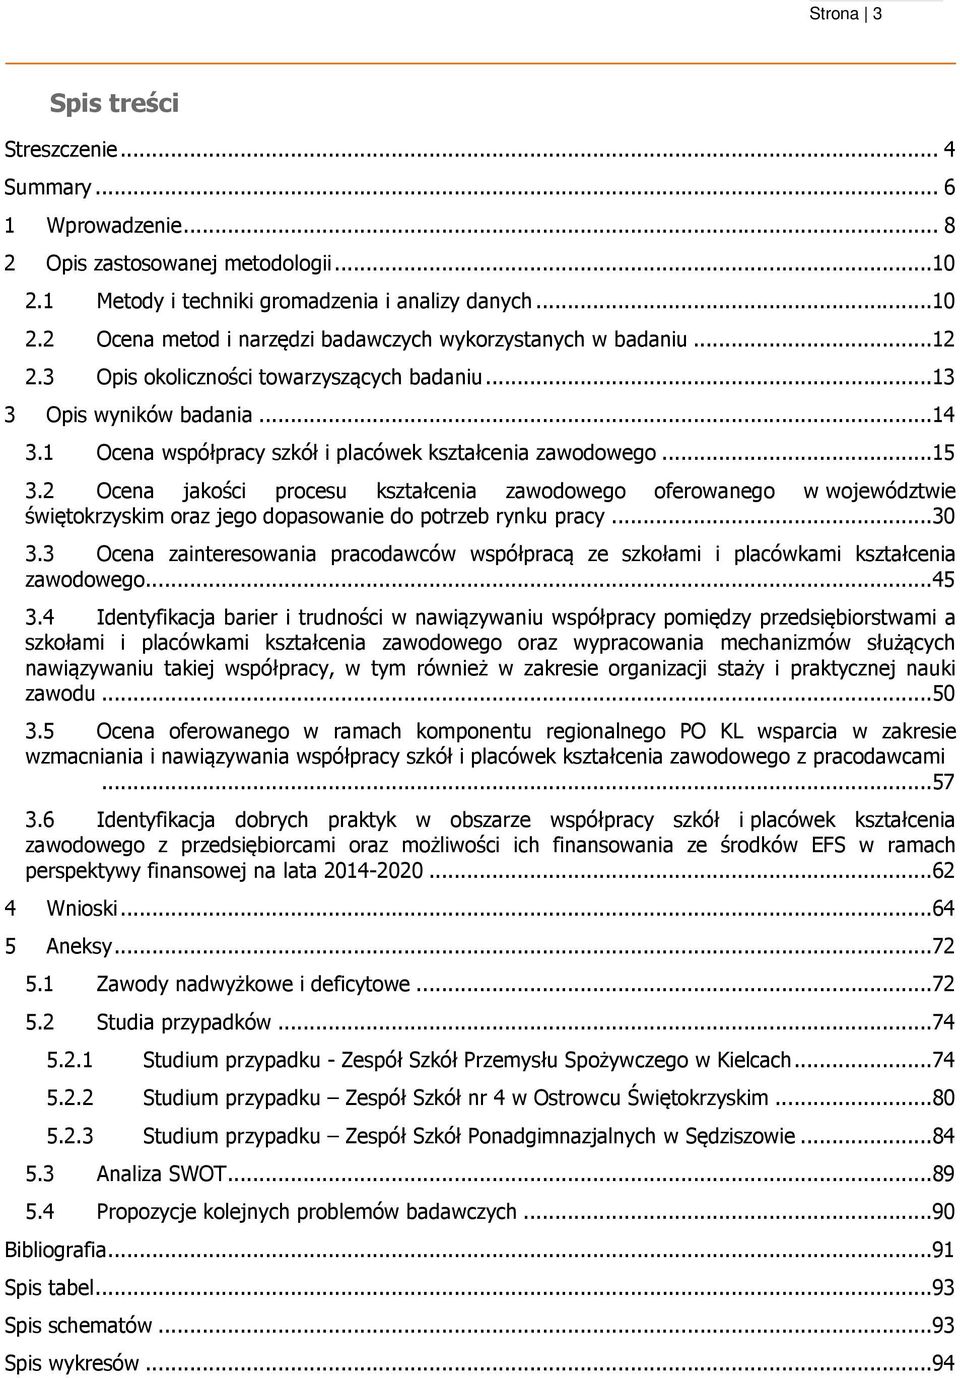 2 Ocena jakości procesu kształcenia zawodowego oferowanego w województwie świętokrzyskim oraz jego dopasowanie do potrzeb rynku pracy...30 3.